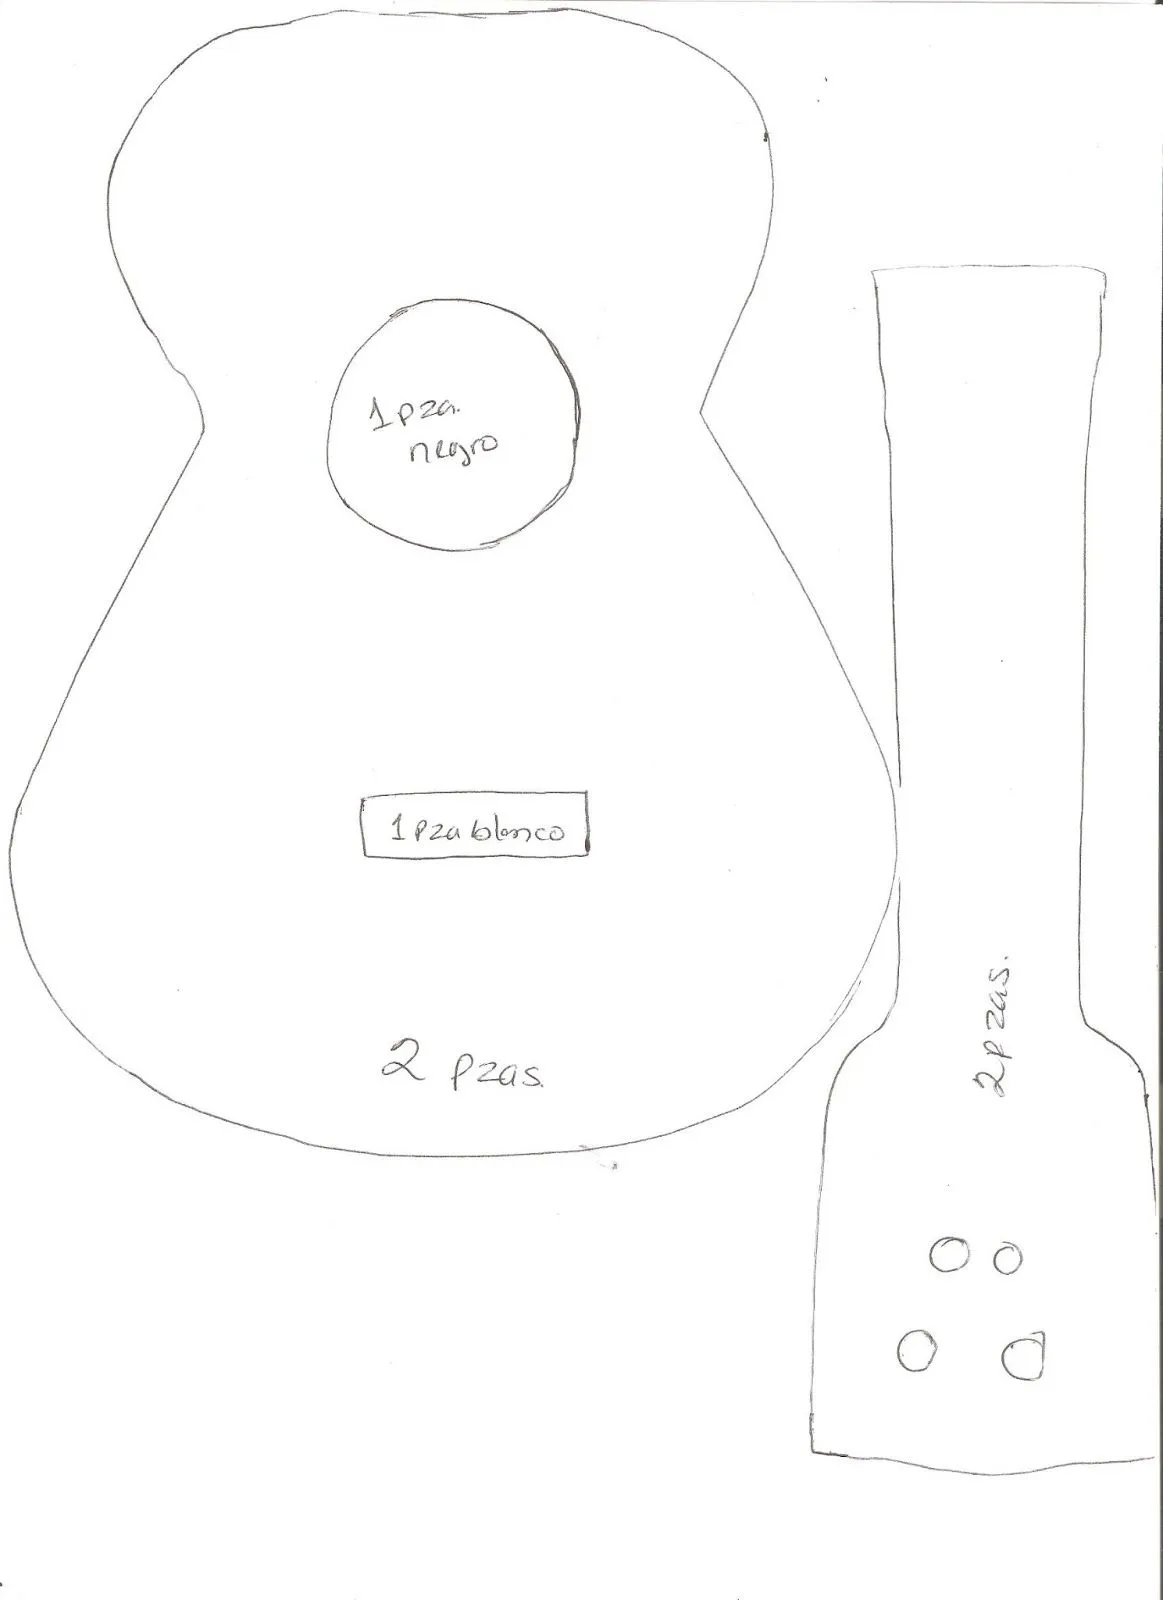 Como hacer una guitarra con fomi - Imagui